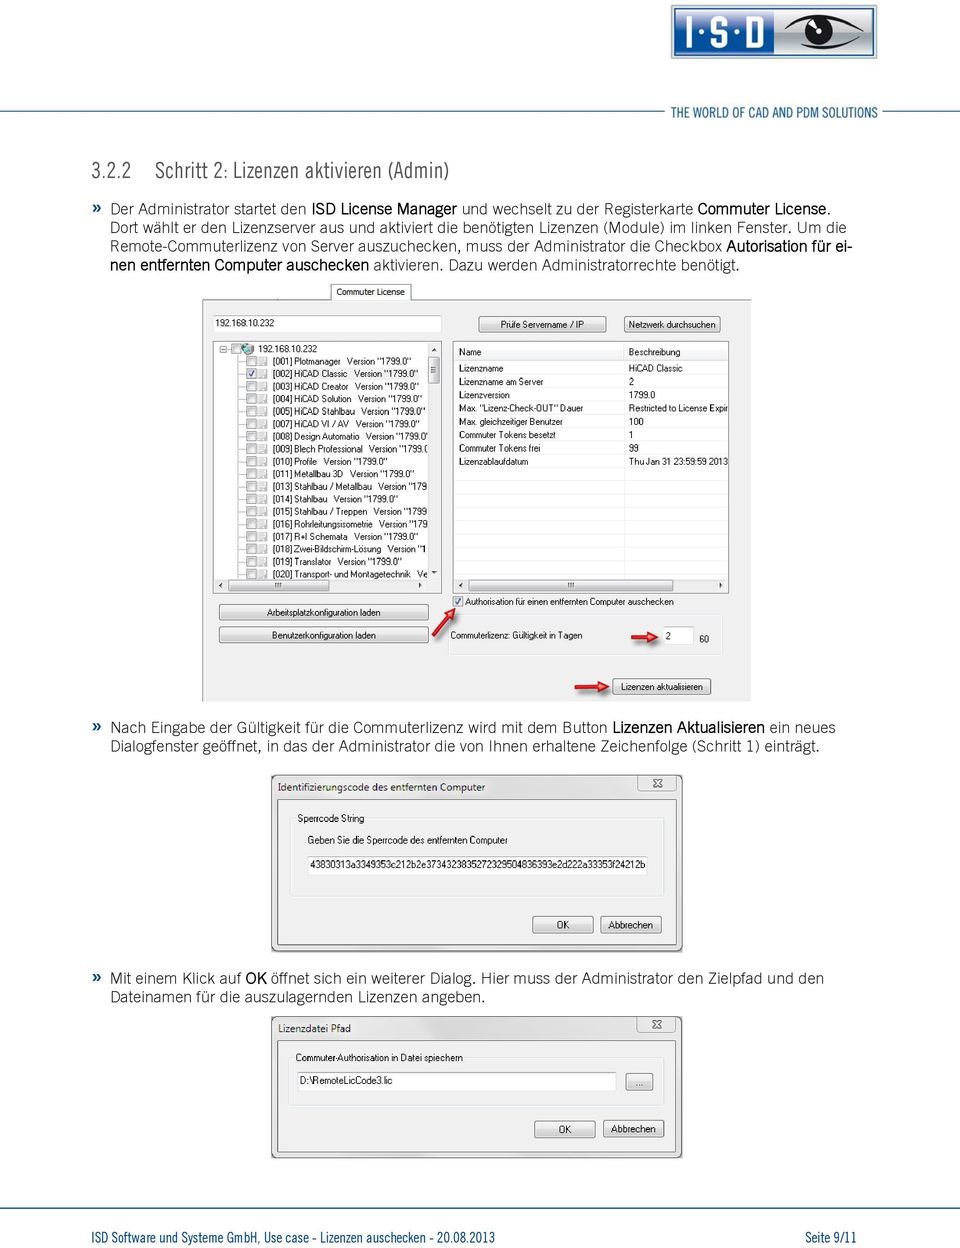 Um die Remote-Commuterlizenz von Server auszuchecken, muss der Administrator die Checkbox Autorisation für einen entfernten Computer auschecken aktivieren. Dazu werden Administratorrechte benötigt.